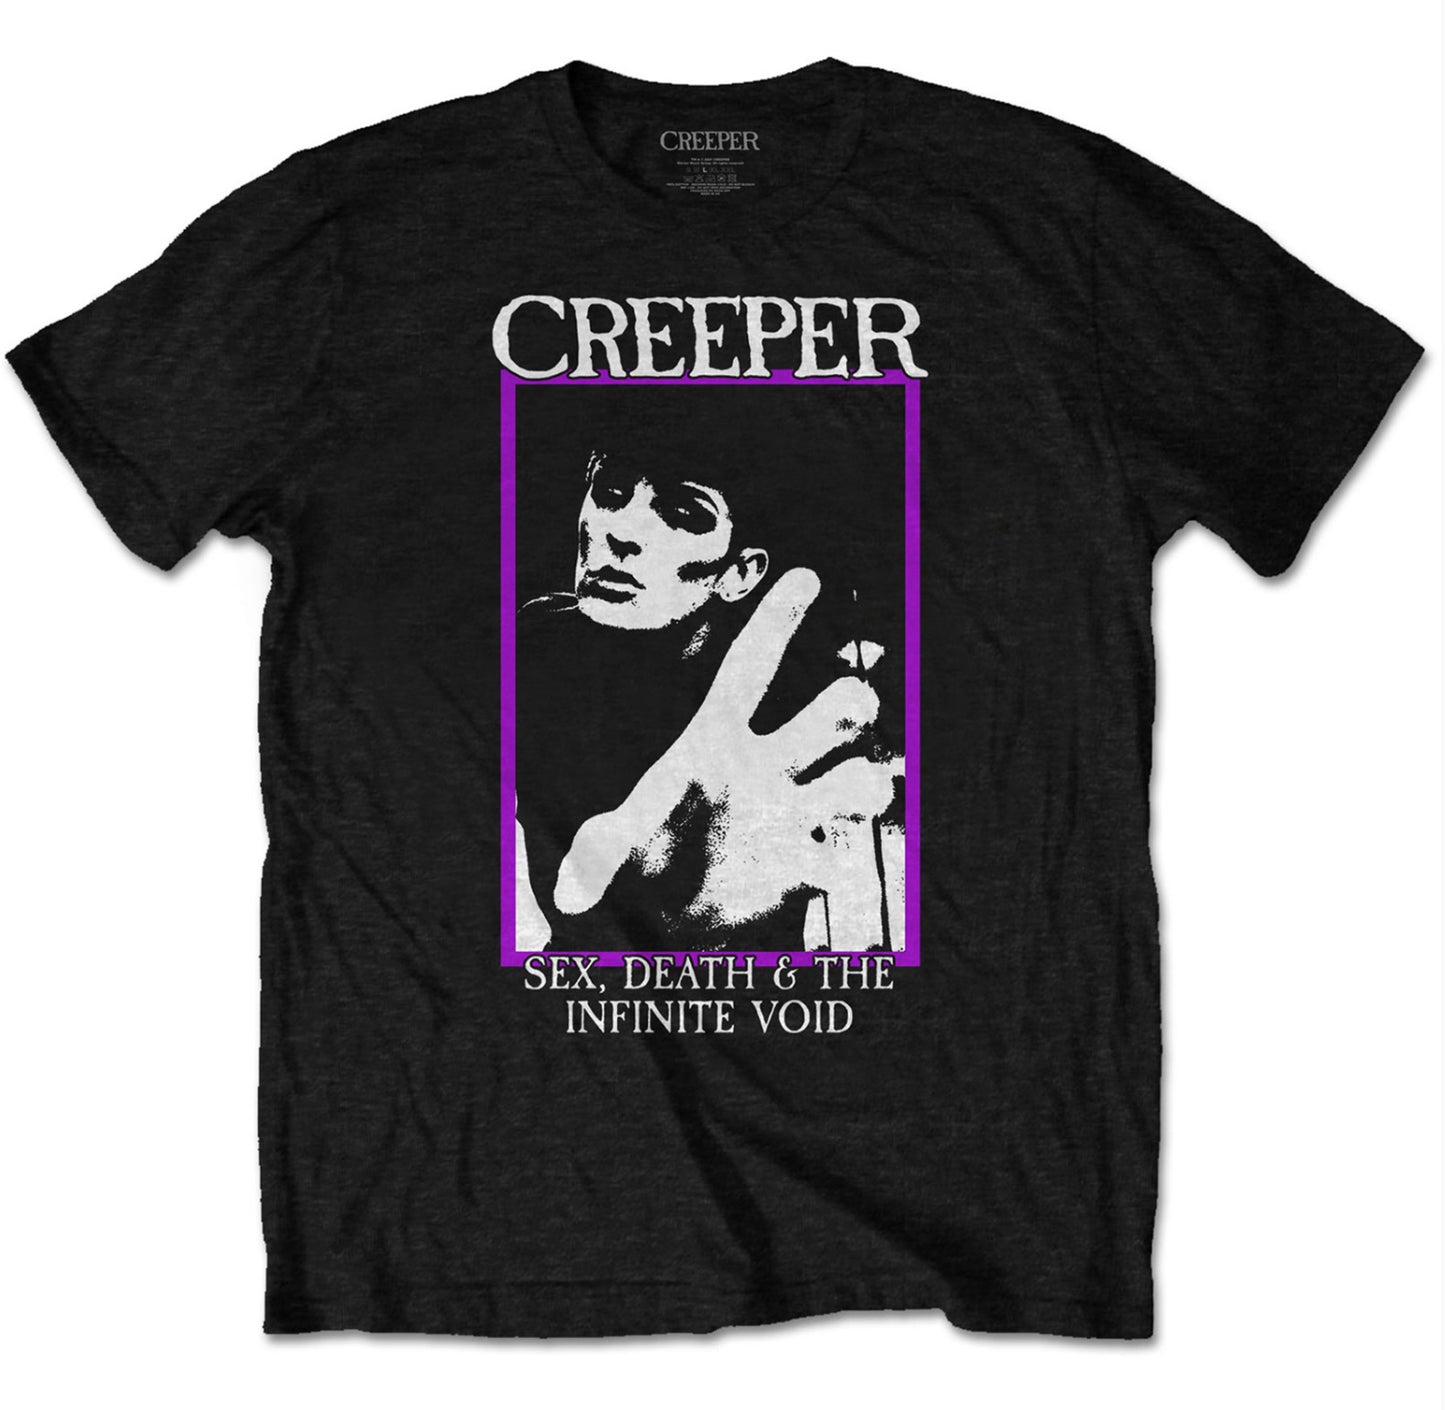 Creeper T-shirts